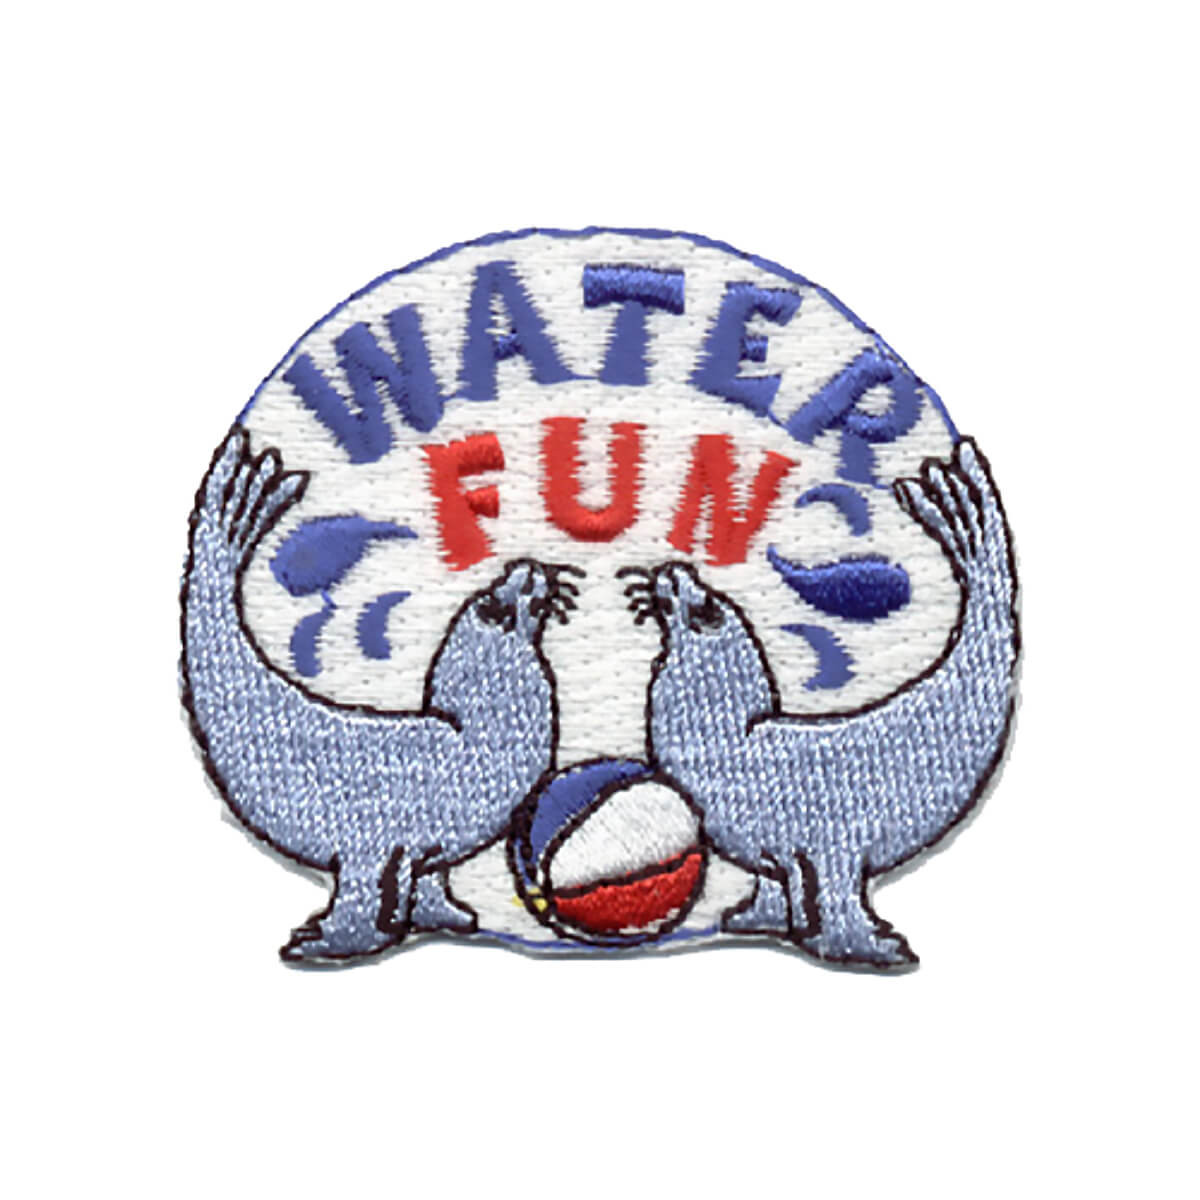 Water Fun - W